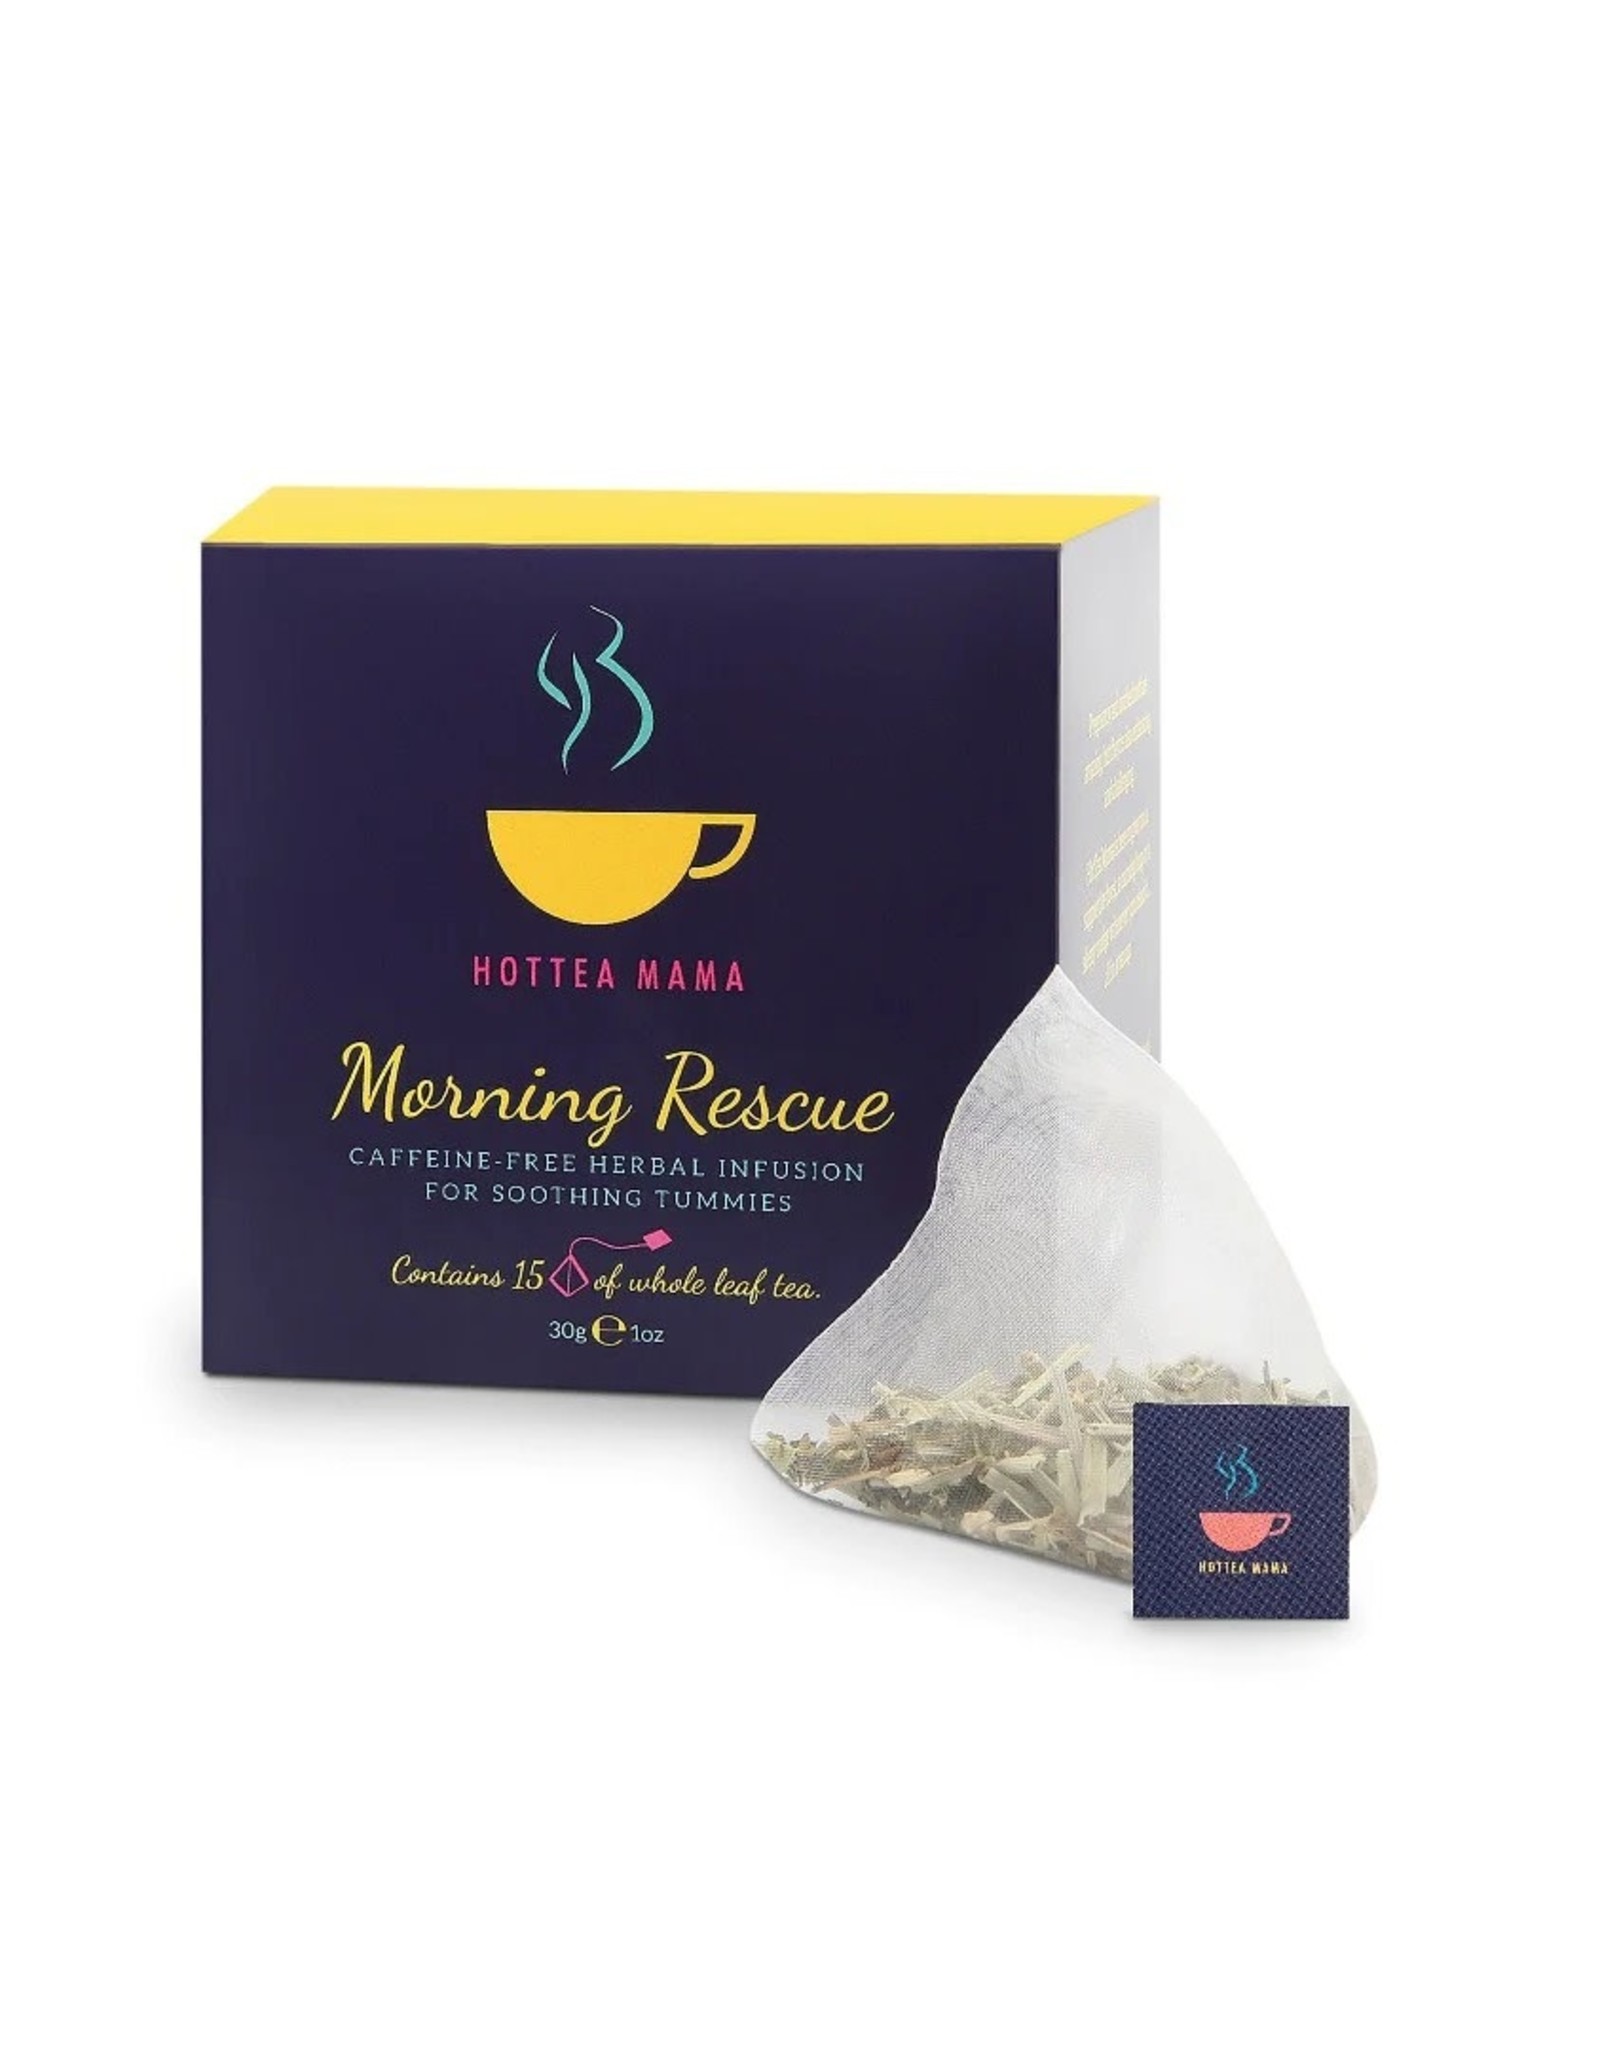 Hottea Mama Morning Rescue Tea 15 x Pyramid Tea Bags